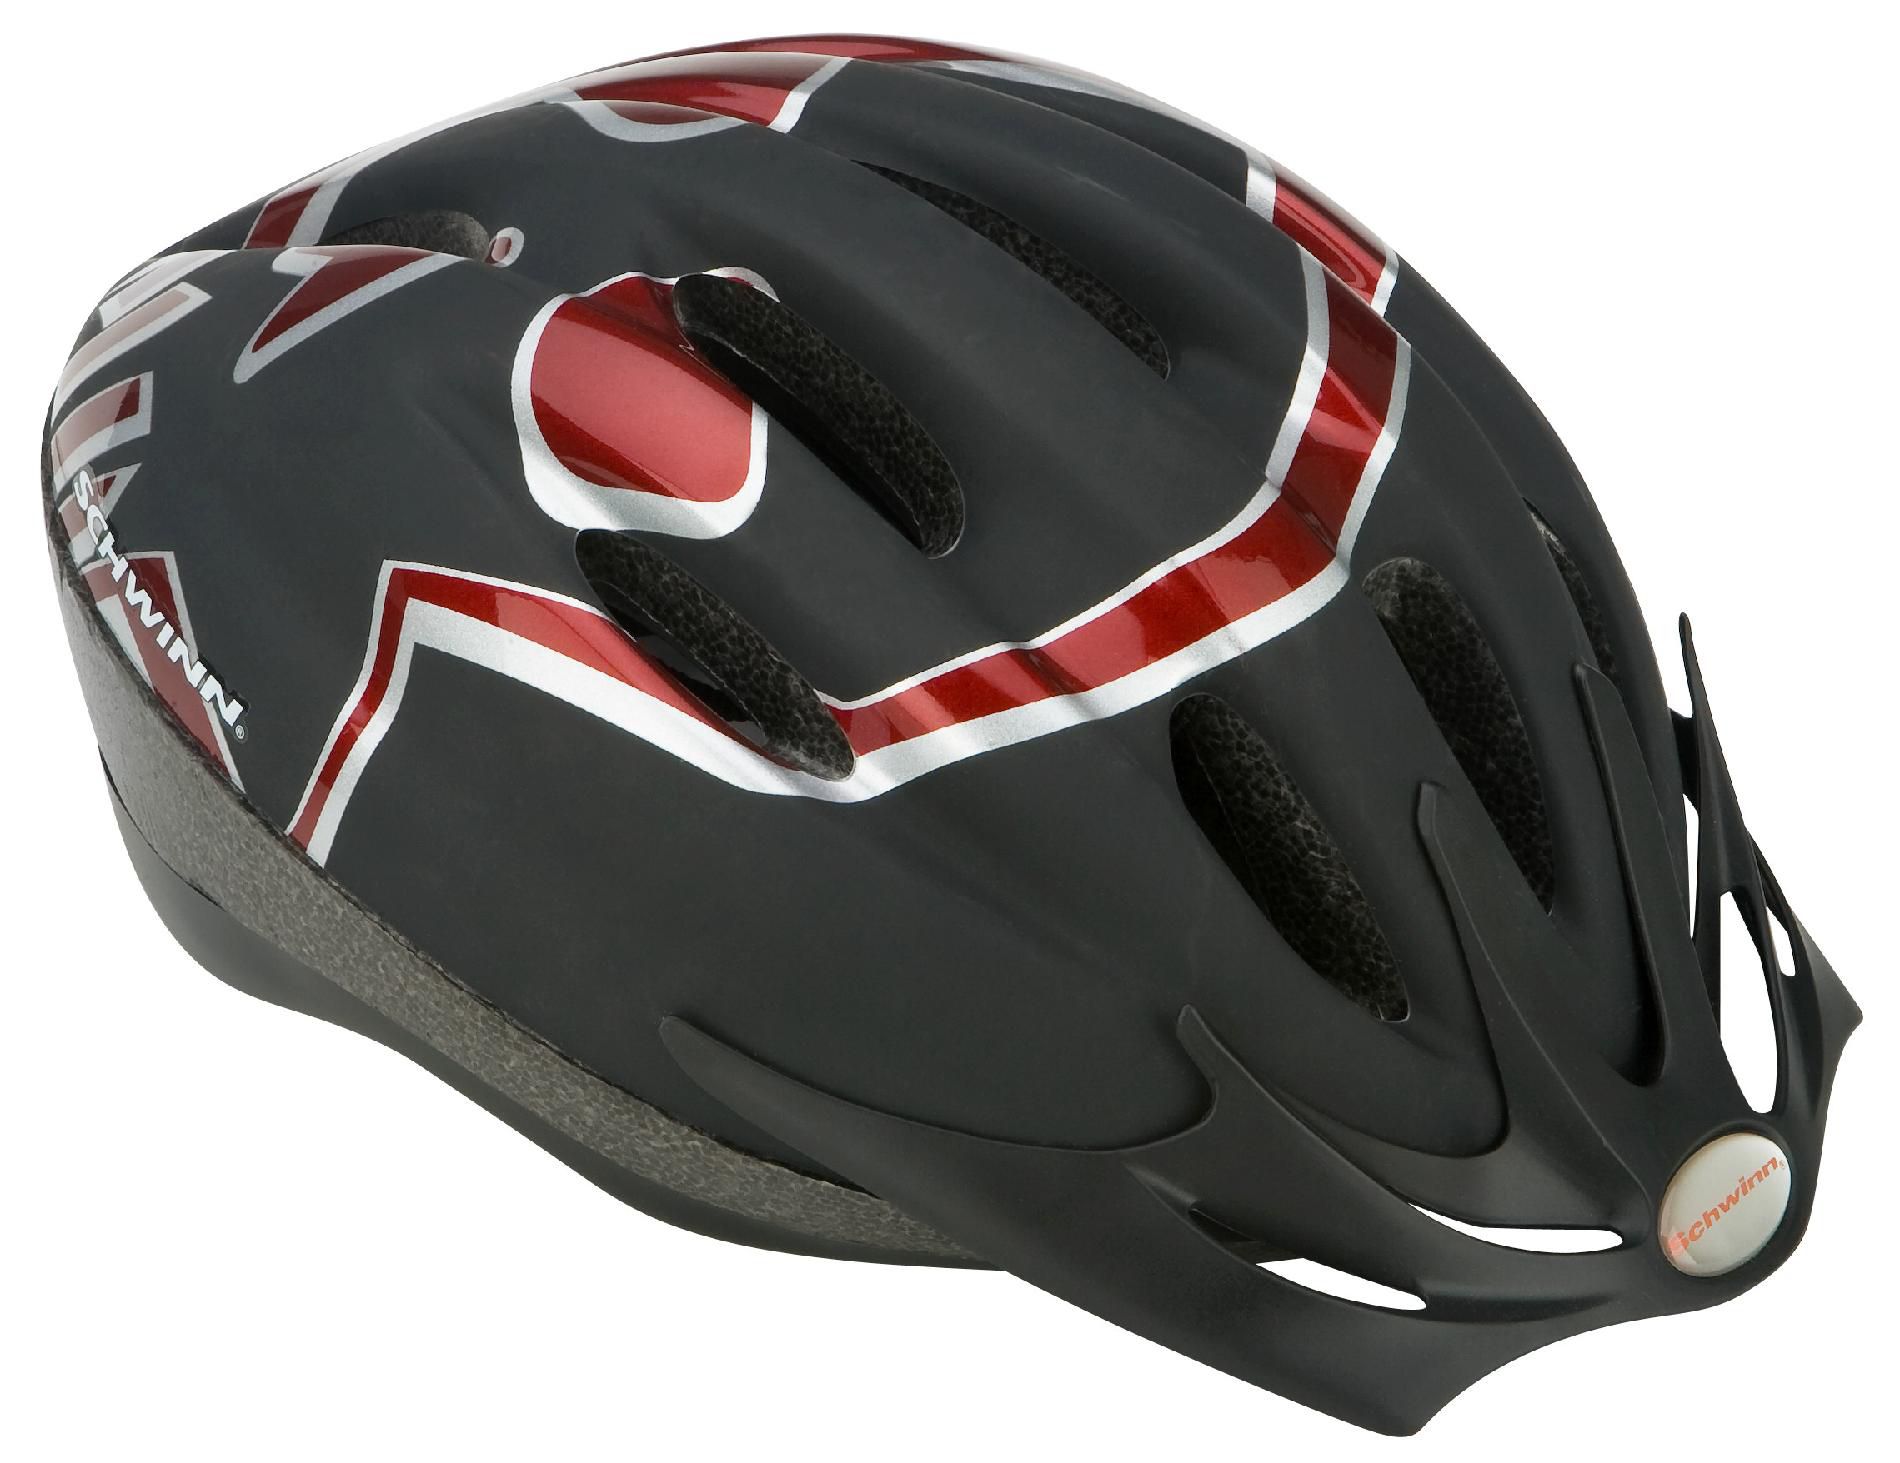 Schwinn Intercept Youth Microshell Bike Helmet